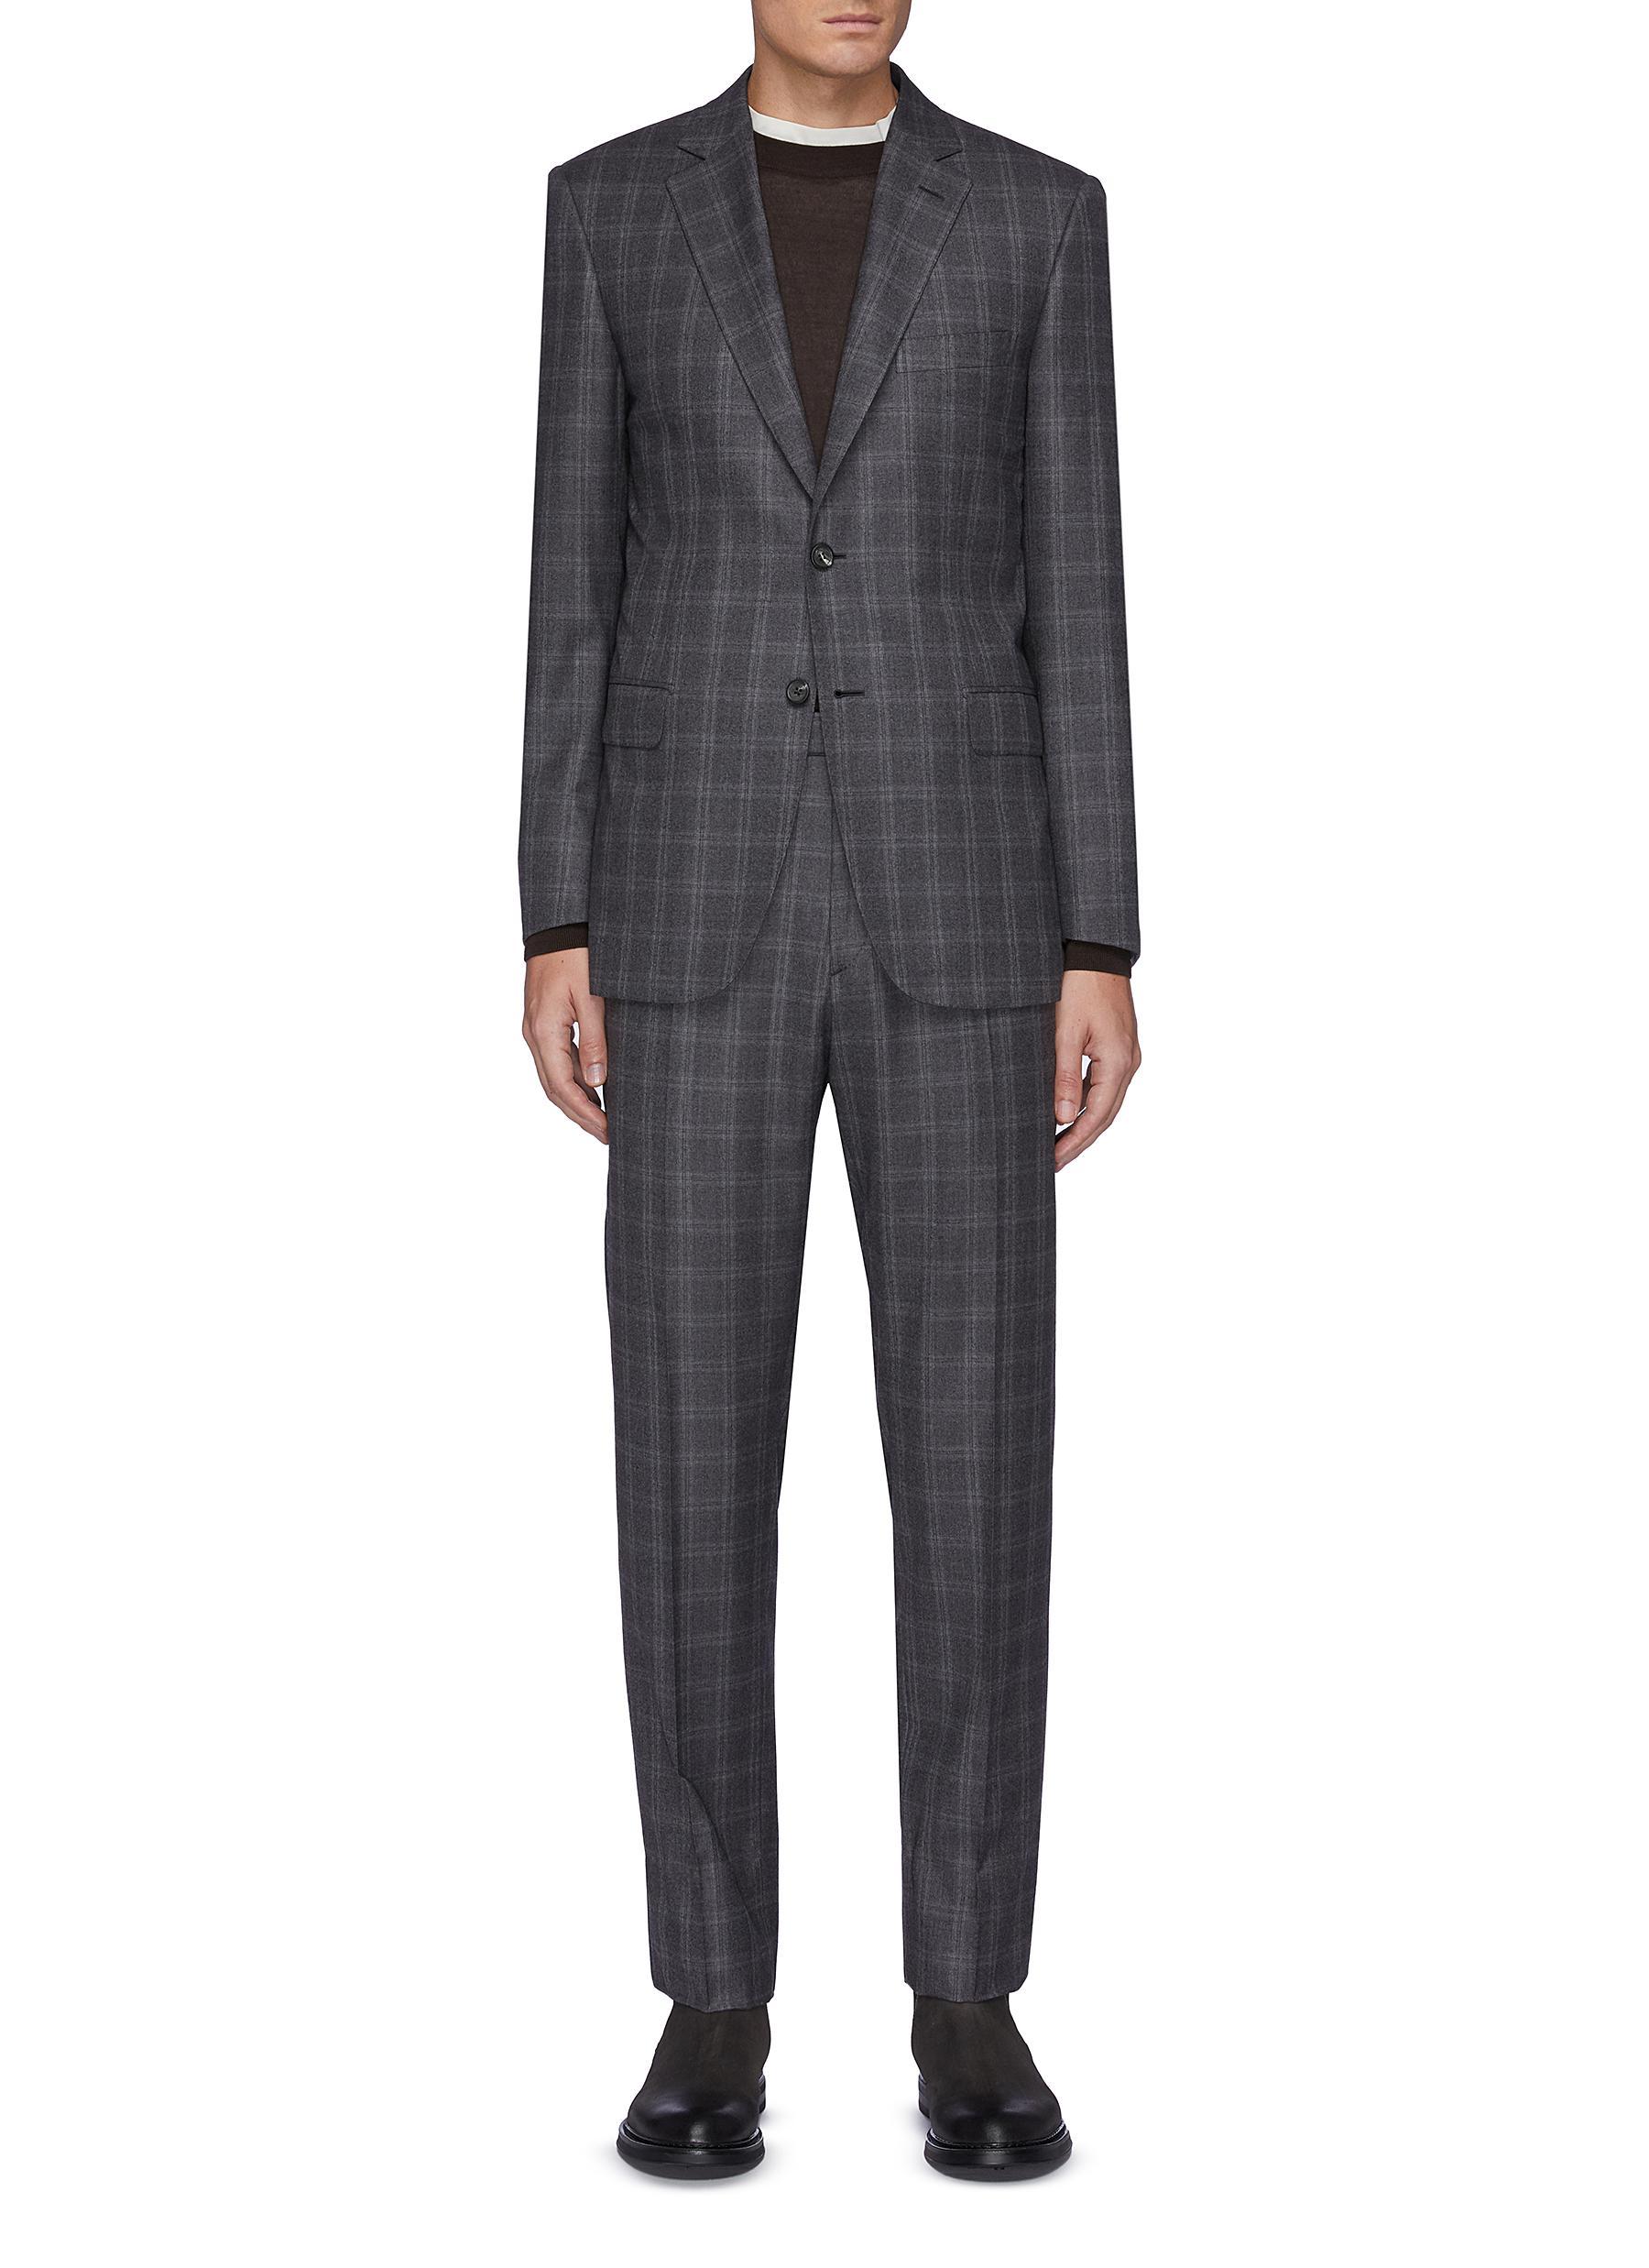 Brioni 'brunico' flannel check notch lapel wool blend suit